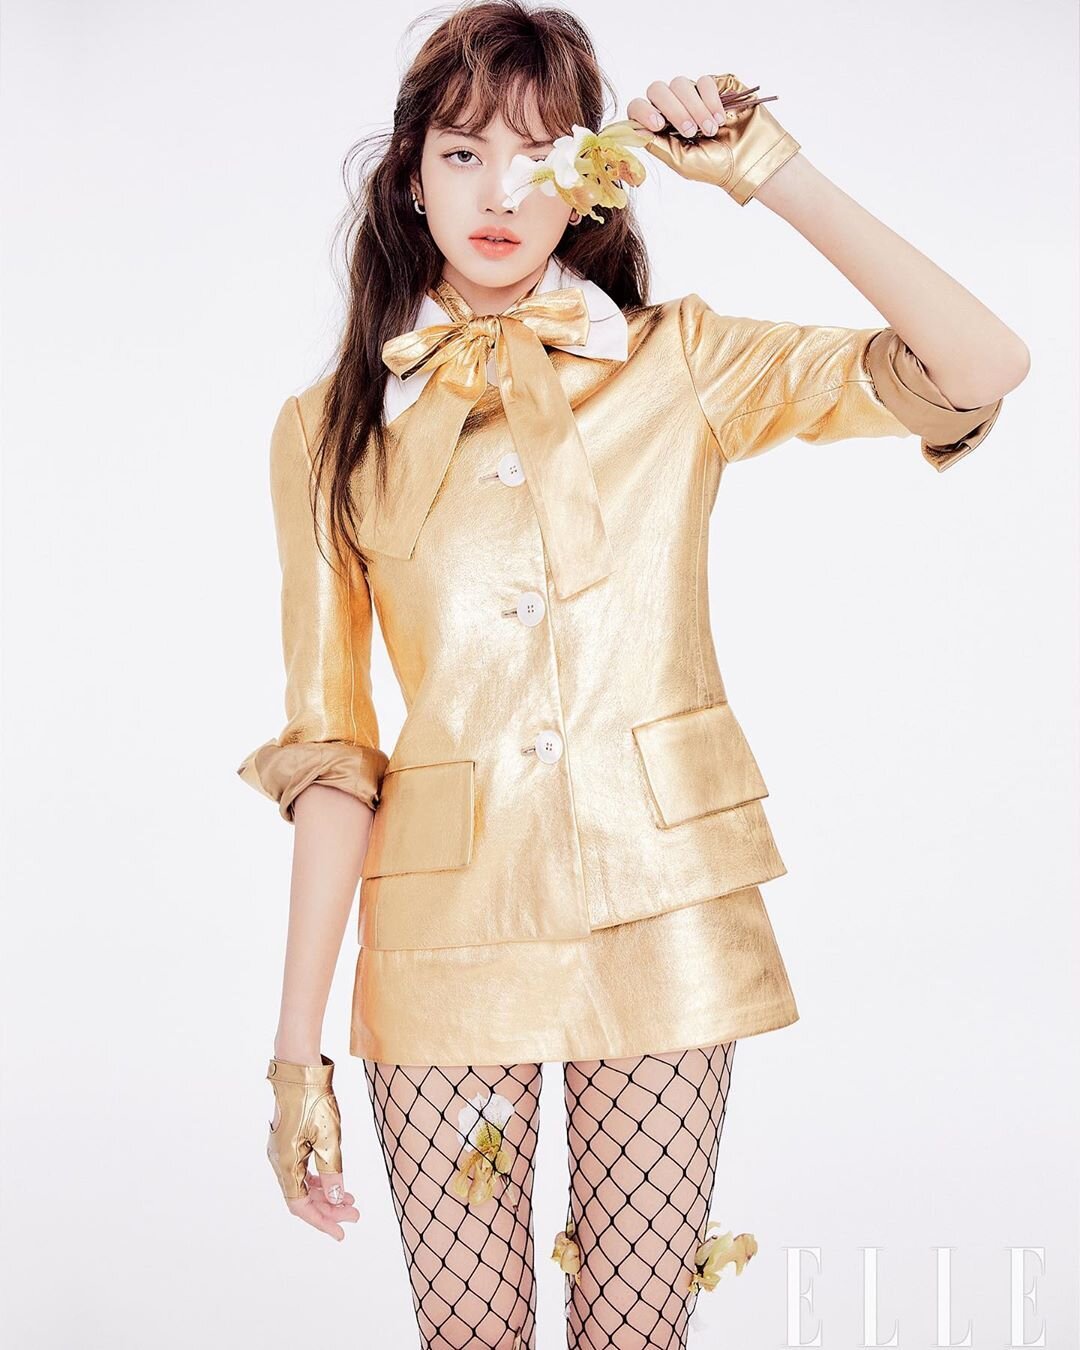 Lisa in Elle Korea Feb 2020 (1).jpg